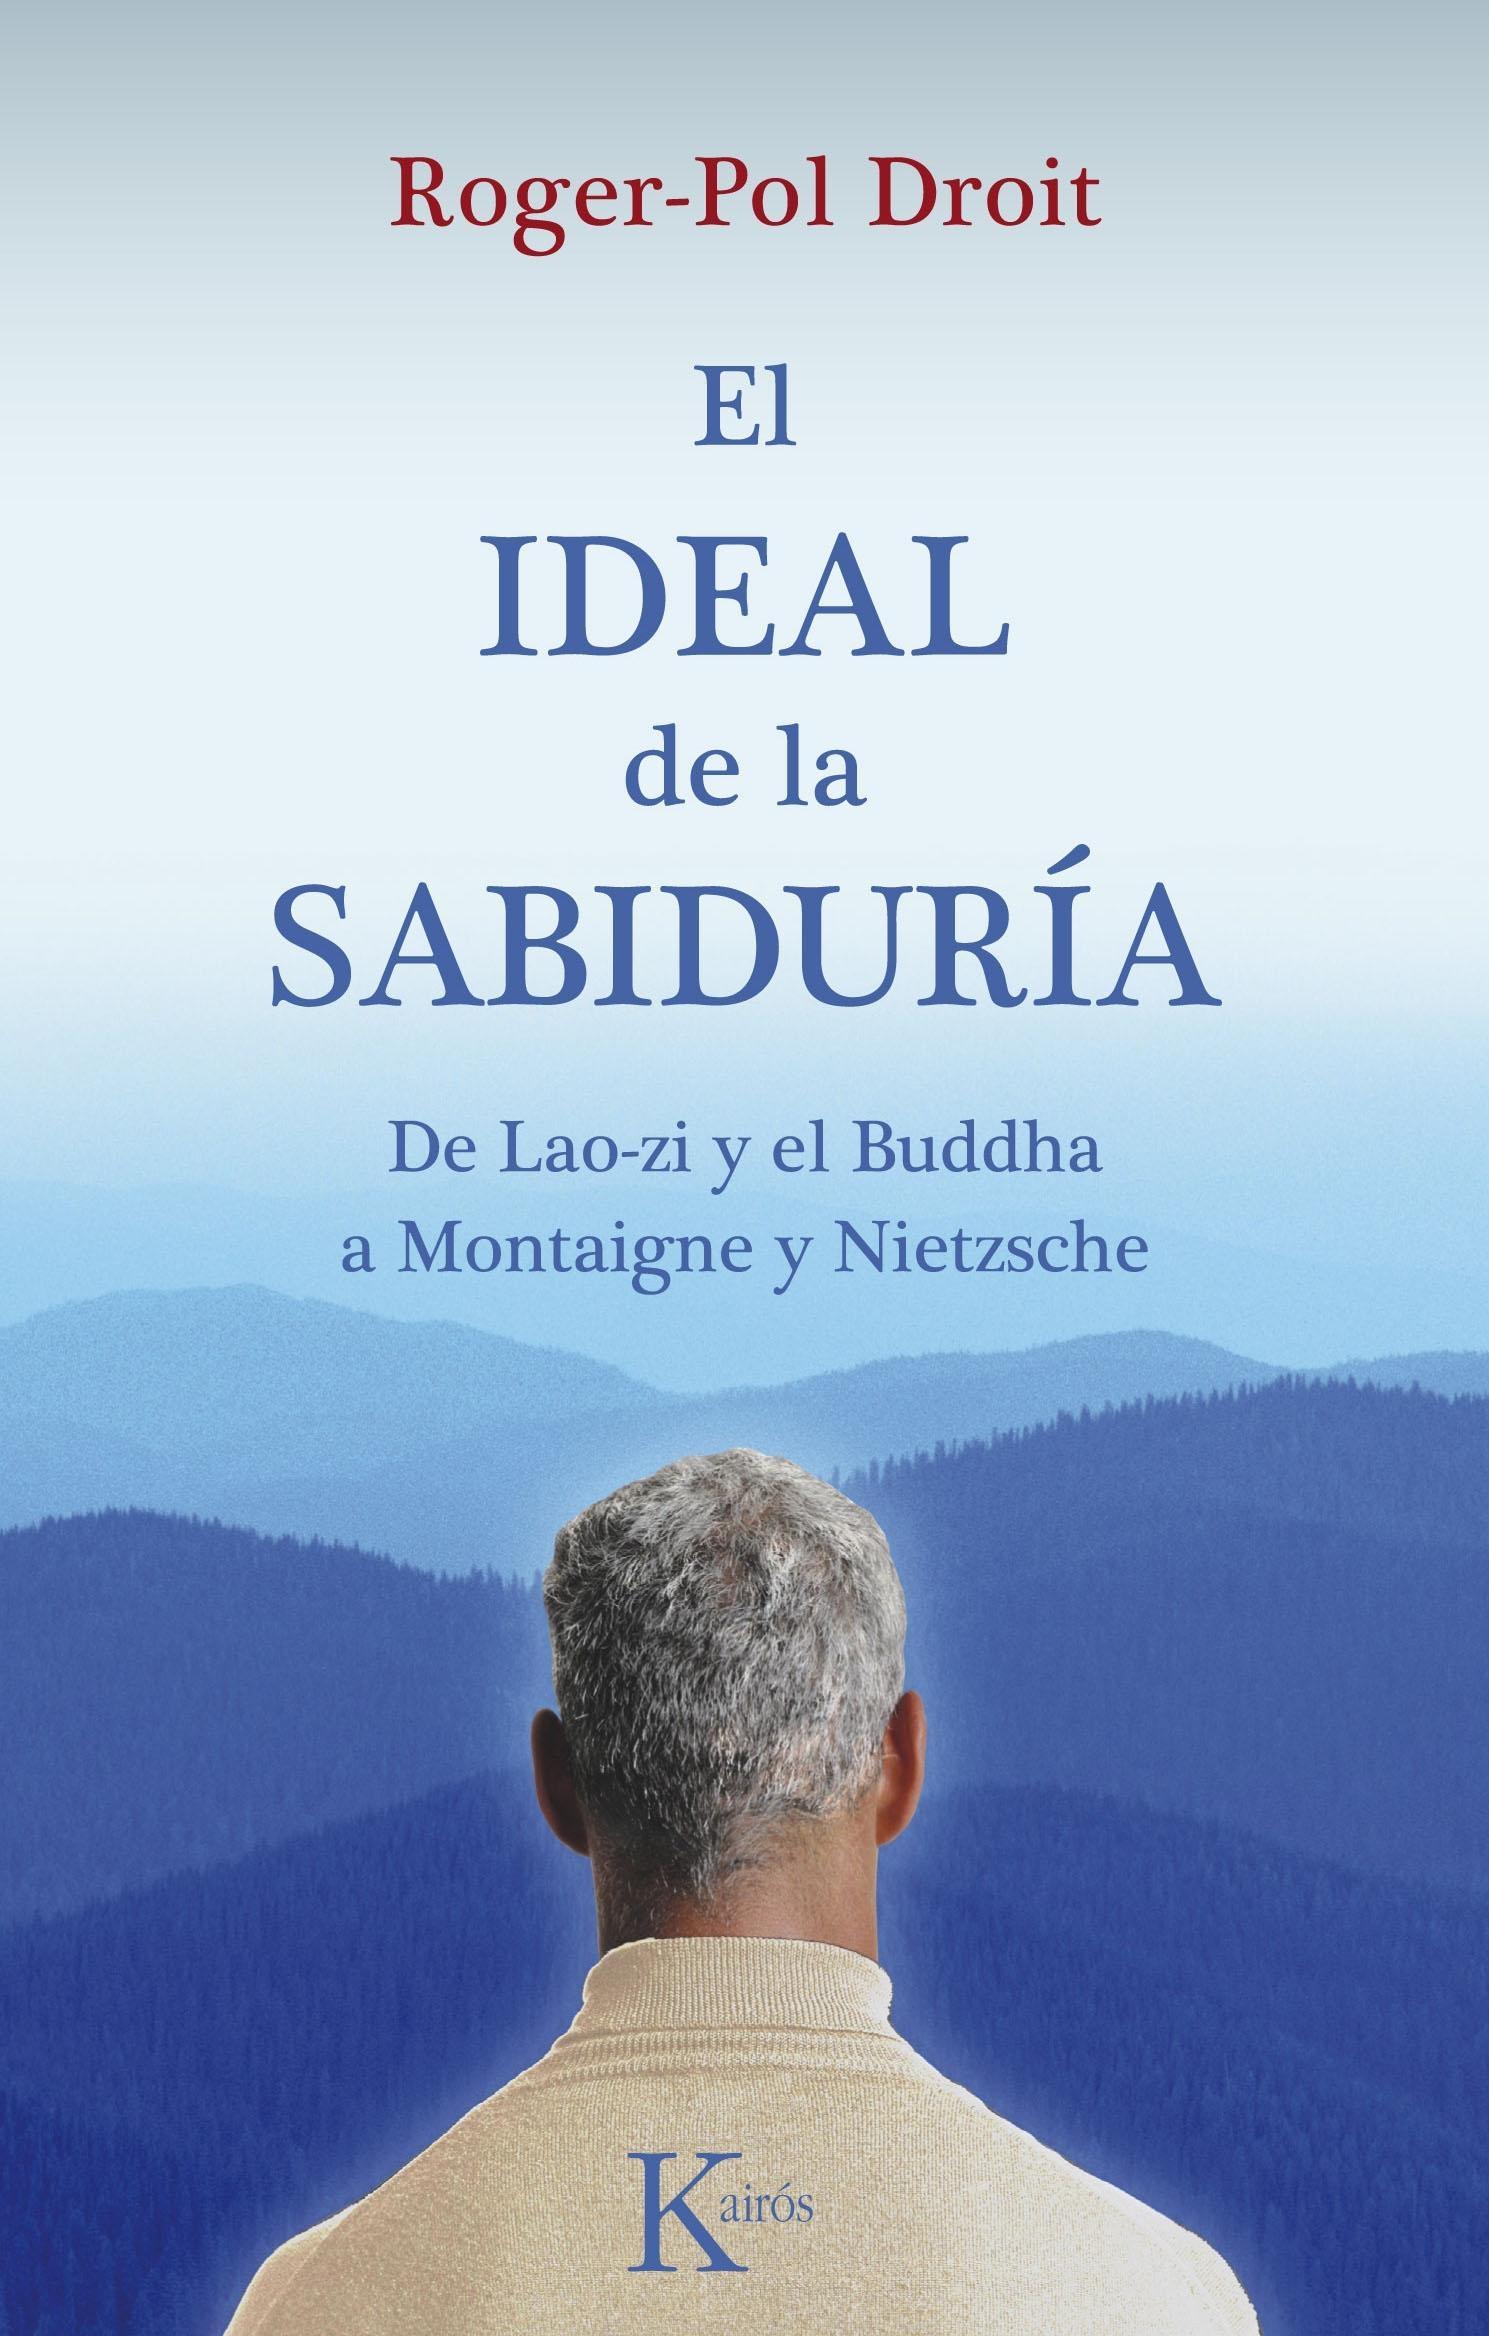 Ideal de la Sabiduria "De Lao Zi y el Buddha a Montaigne y Nietzsche". 